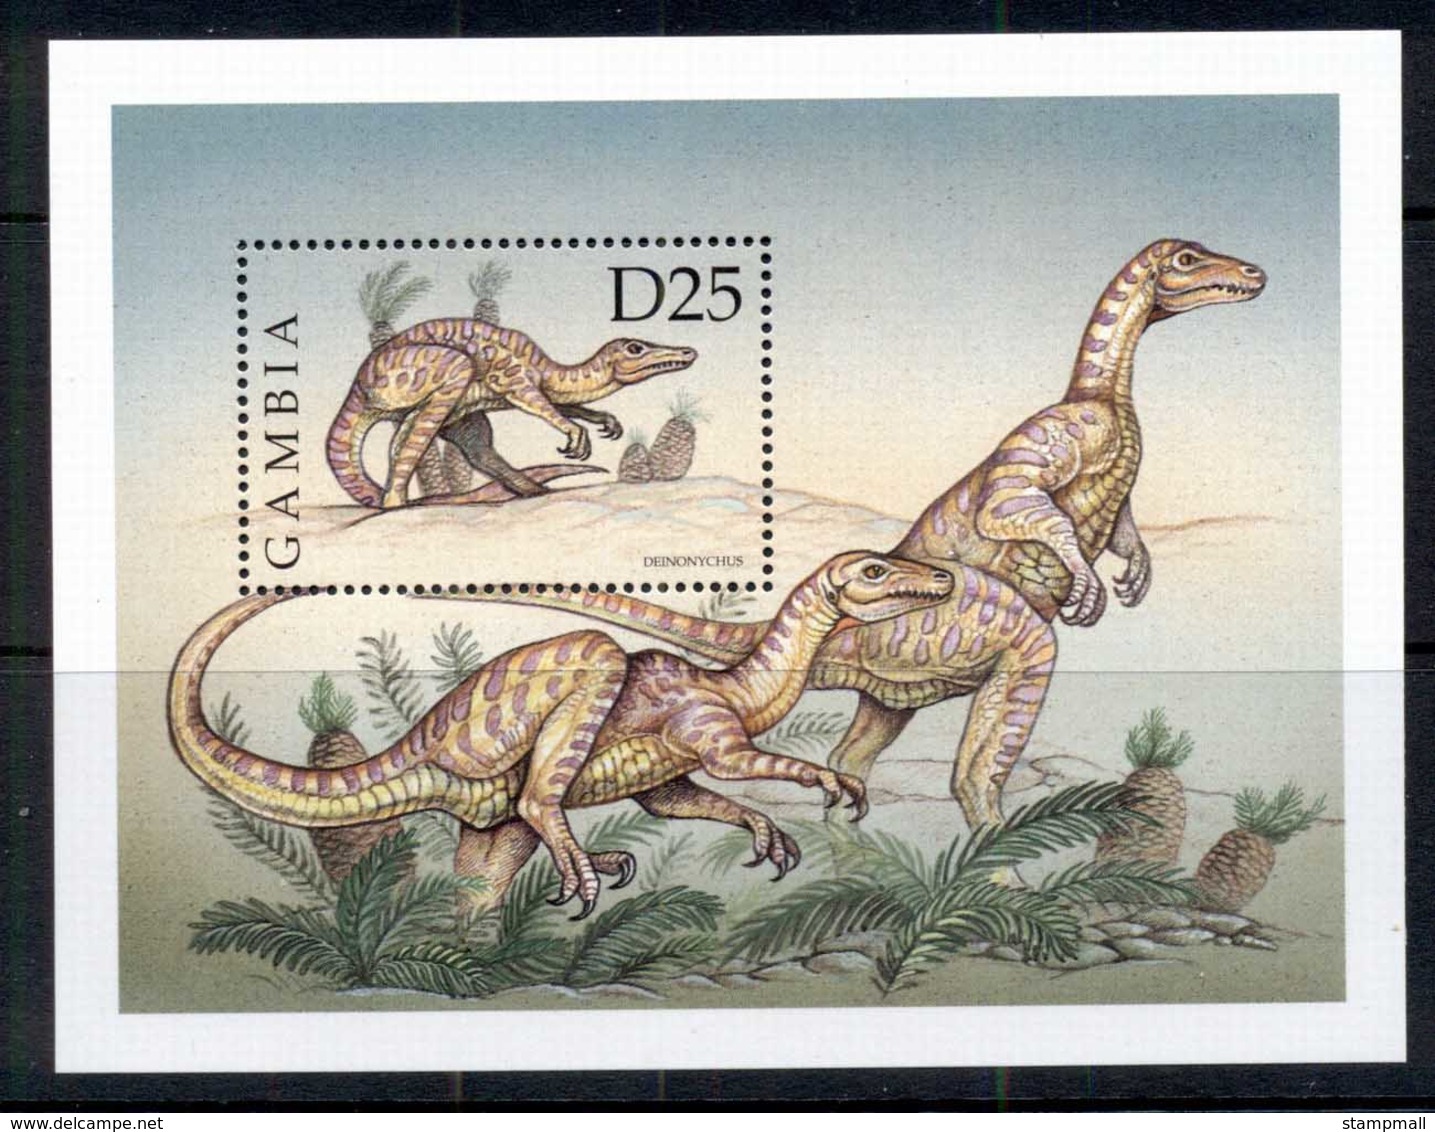 Gambia 1999 Prehistoric Animals, Dinosaurs MS MUH - Gambia (1965-...)